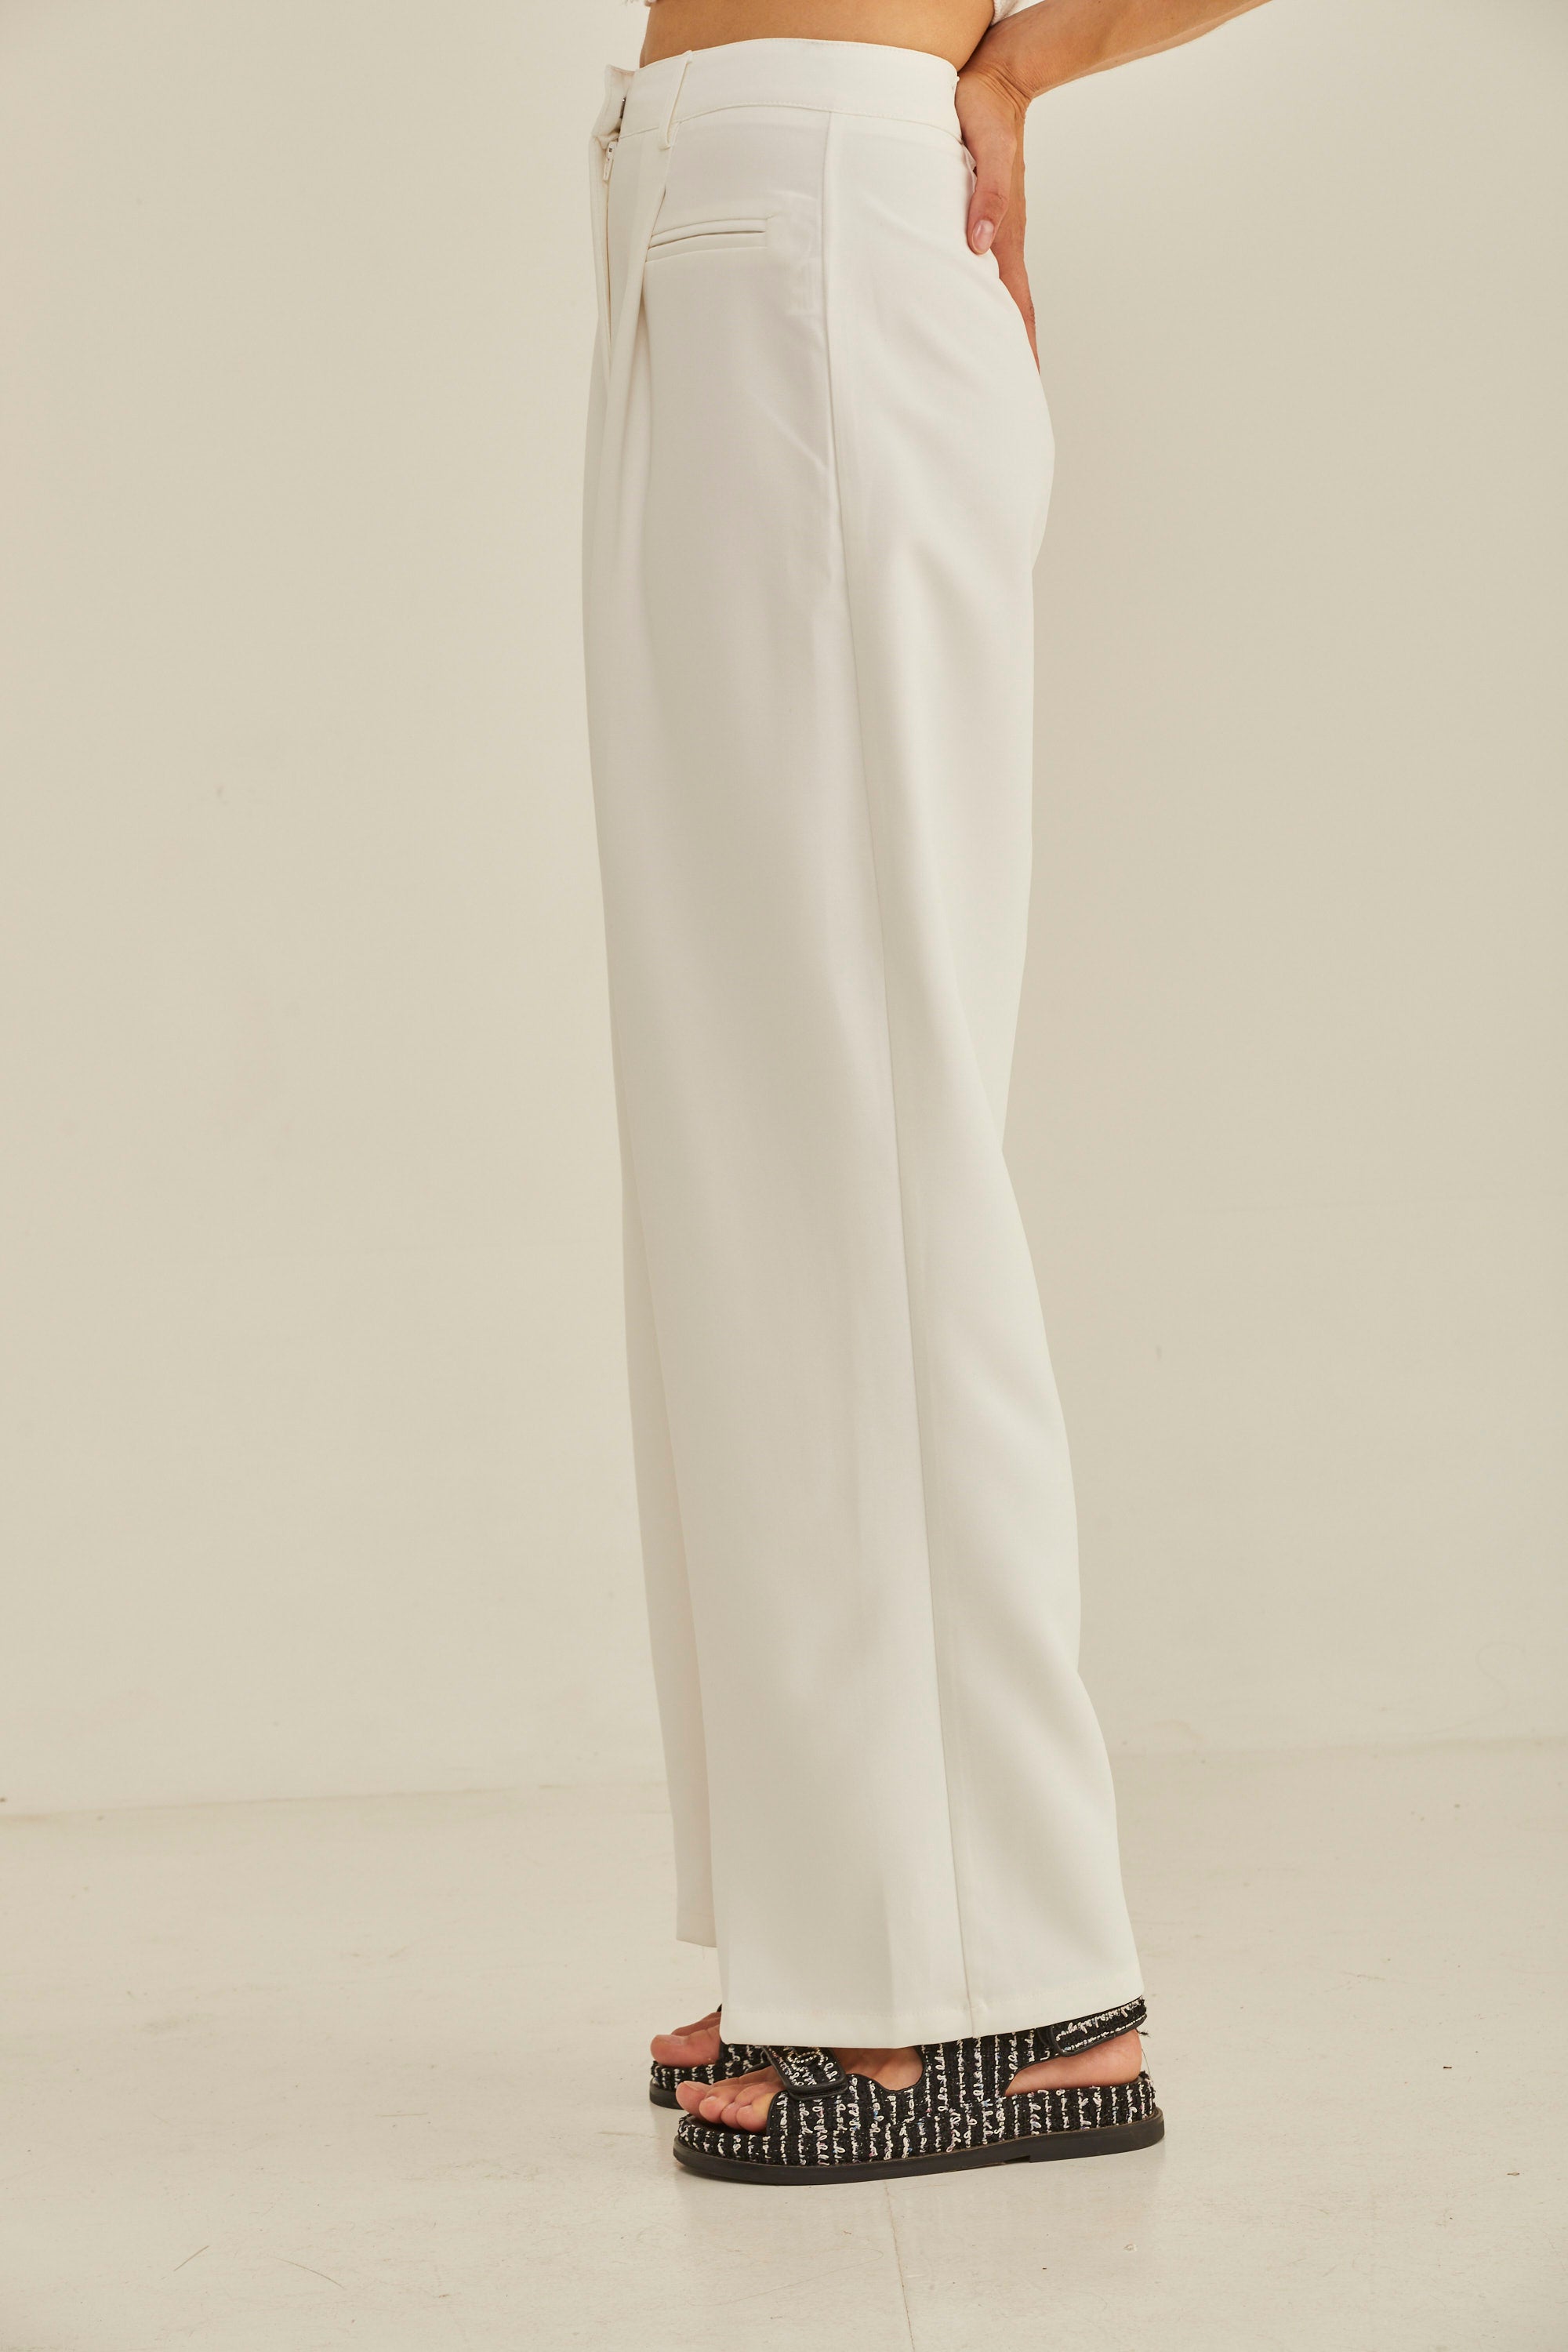 Tiana pants white